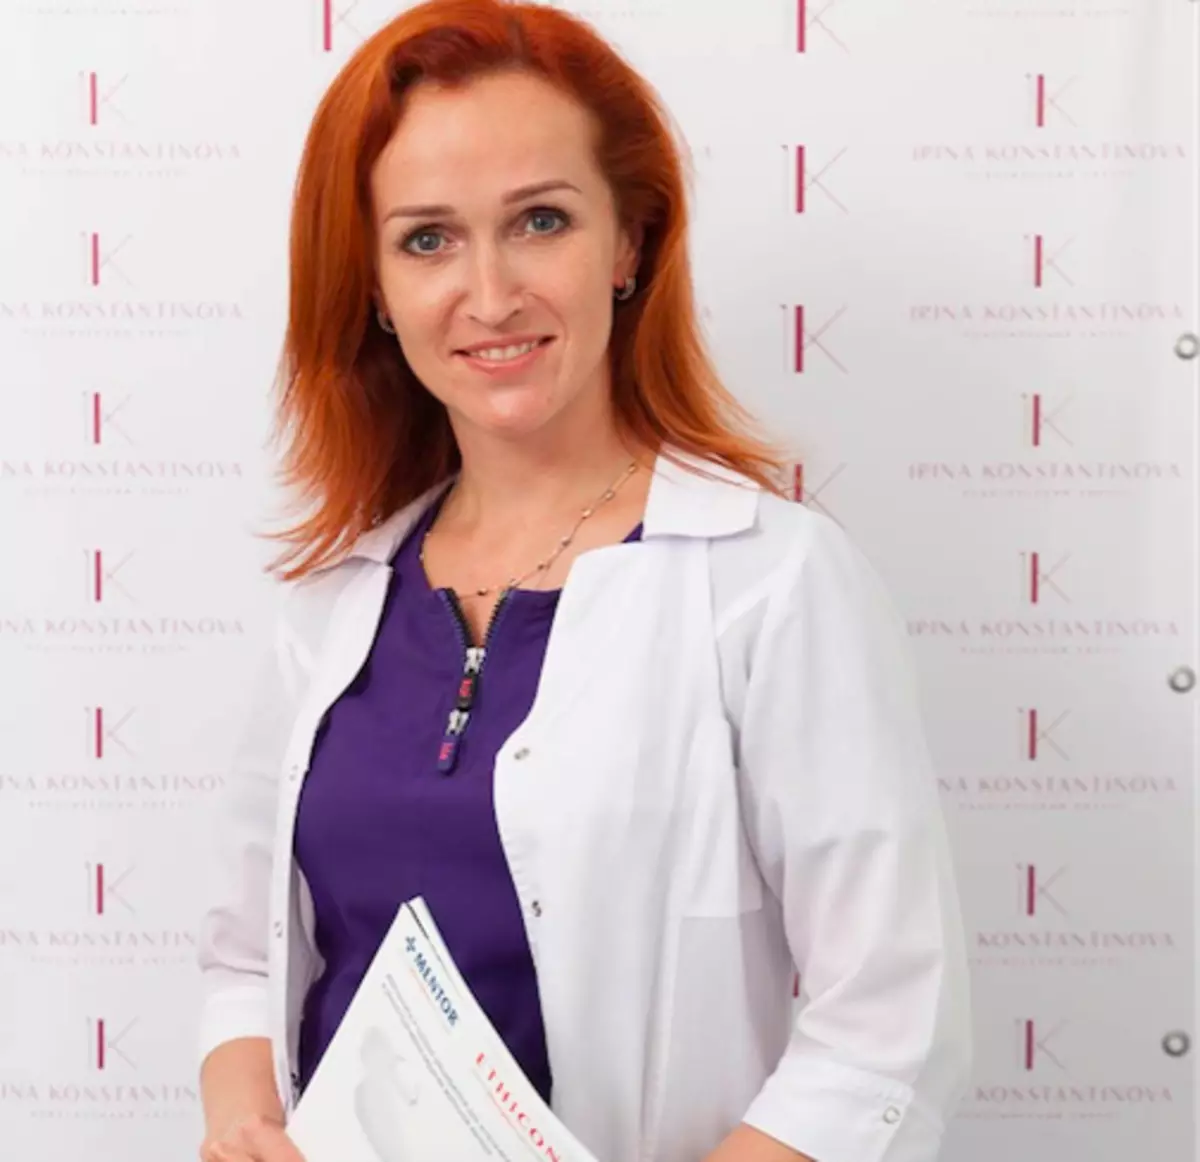 Plasztikai sebész Irina Konstantinova